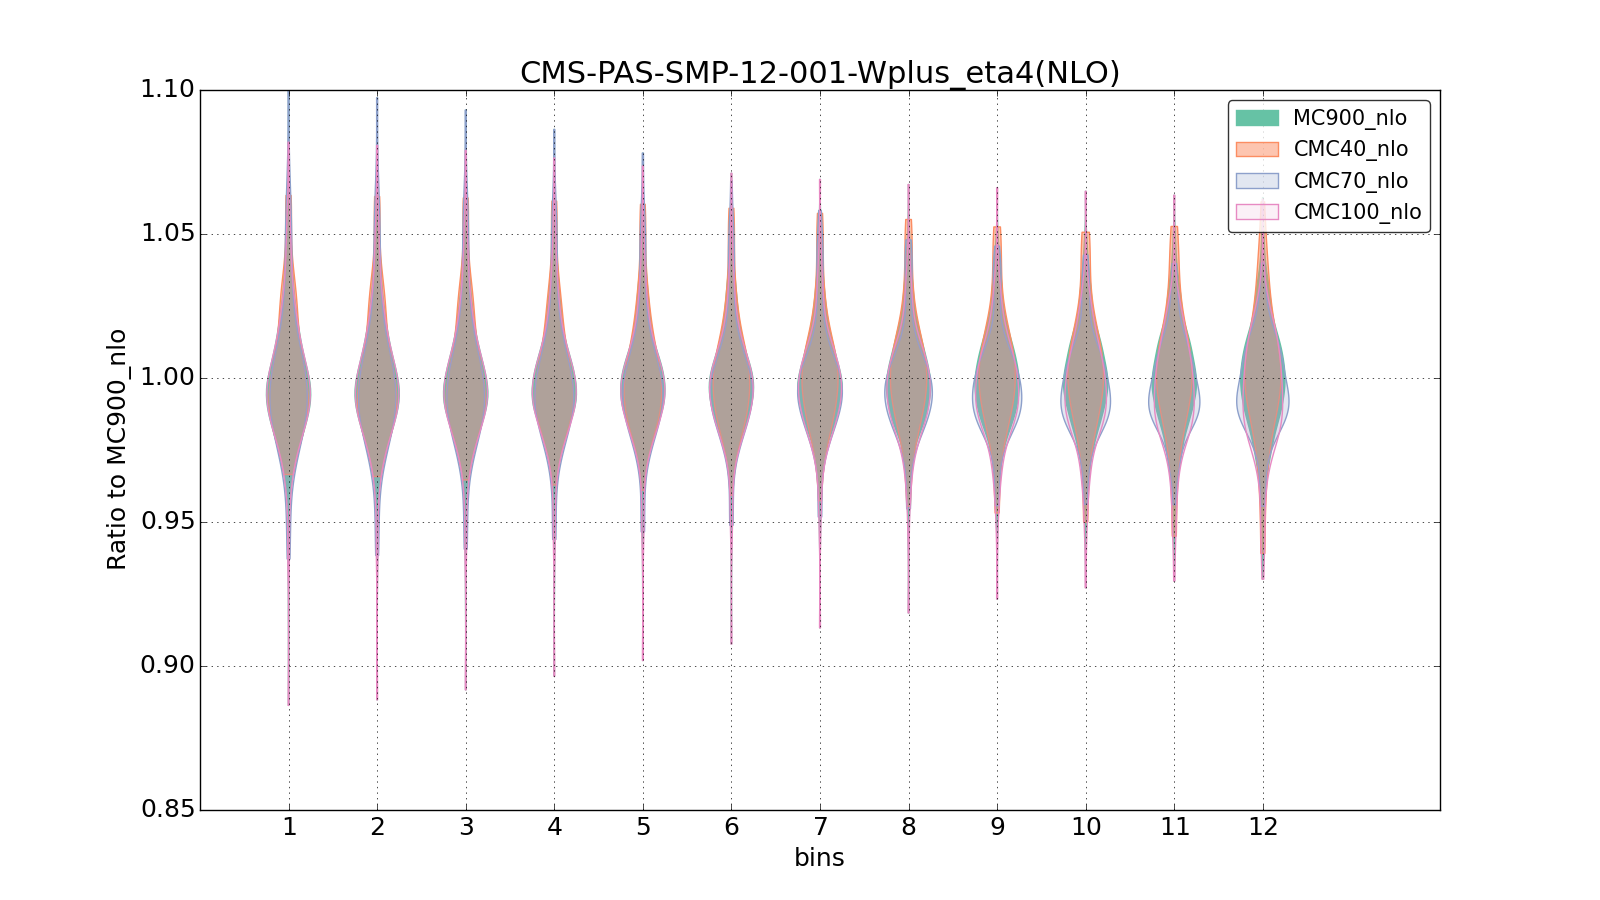 figure plots/CMCpheno/group_1_violinplot_CMS-PAS-SMP-12-001-Wplus_eta4(NLO).png